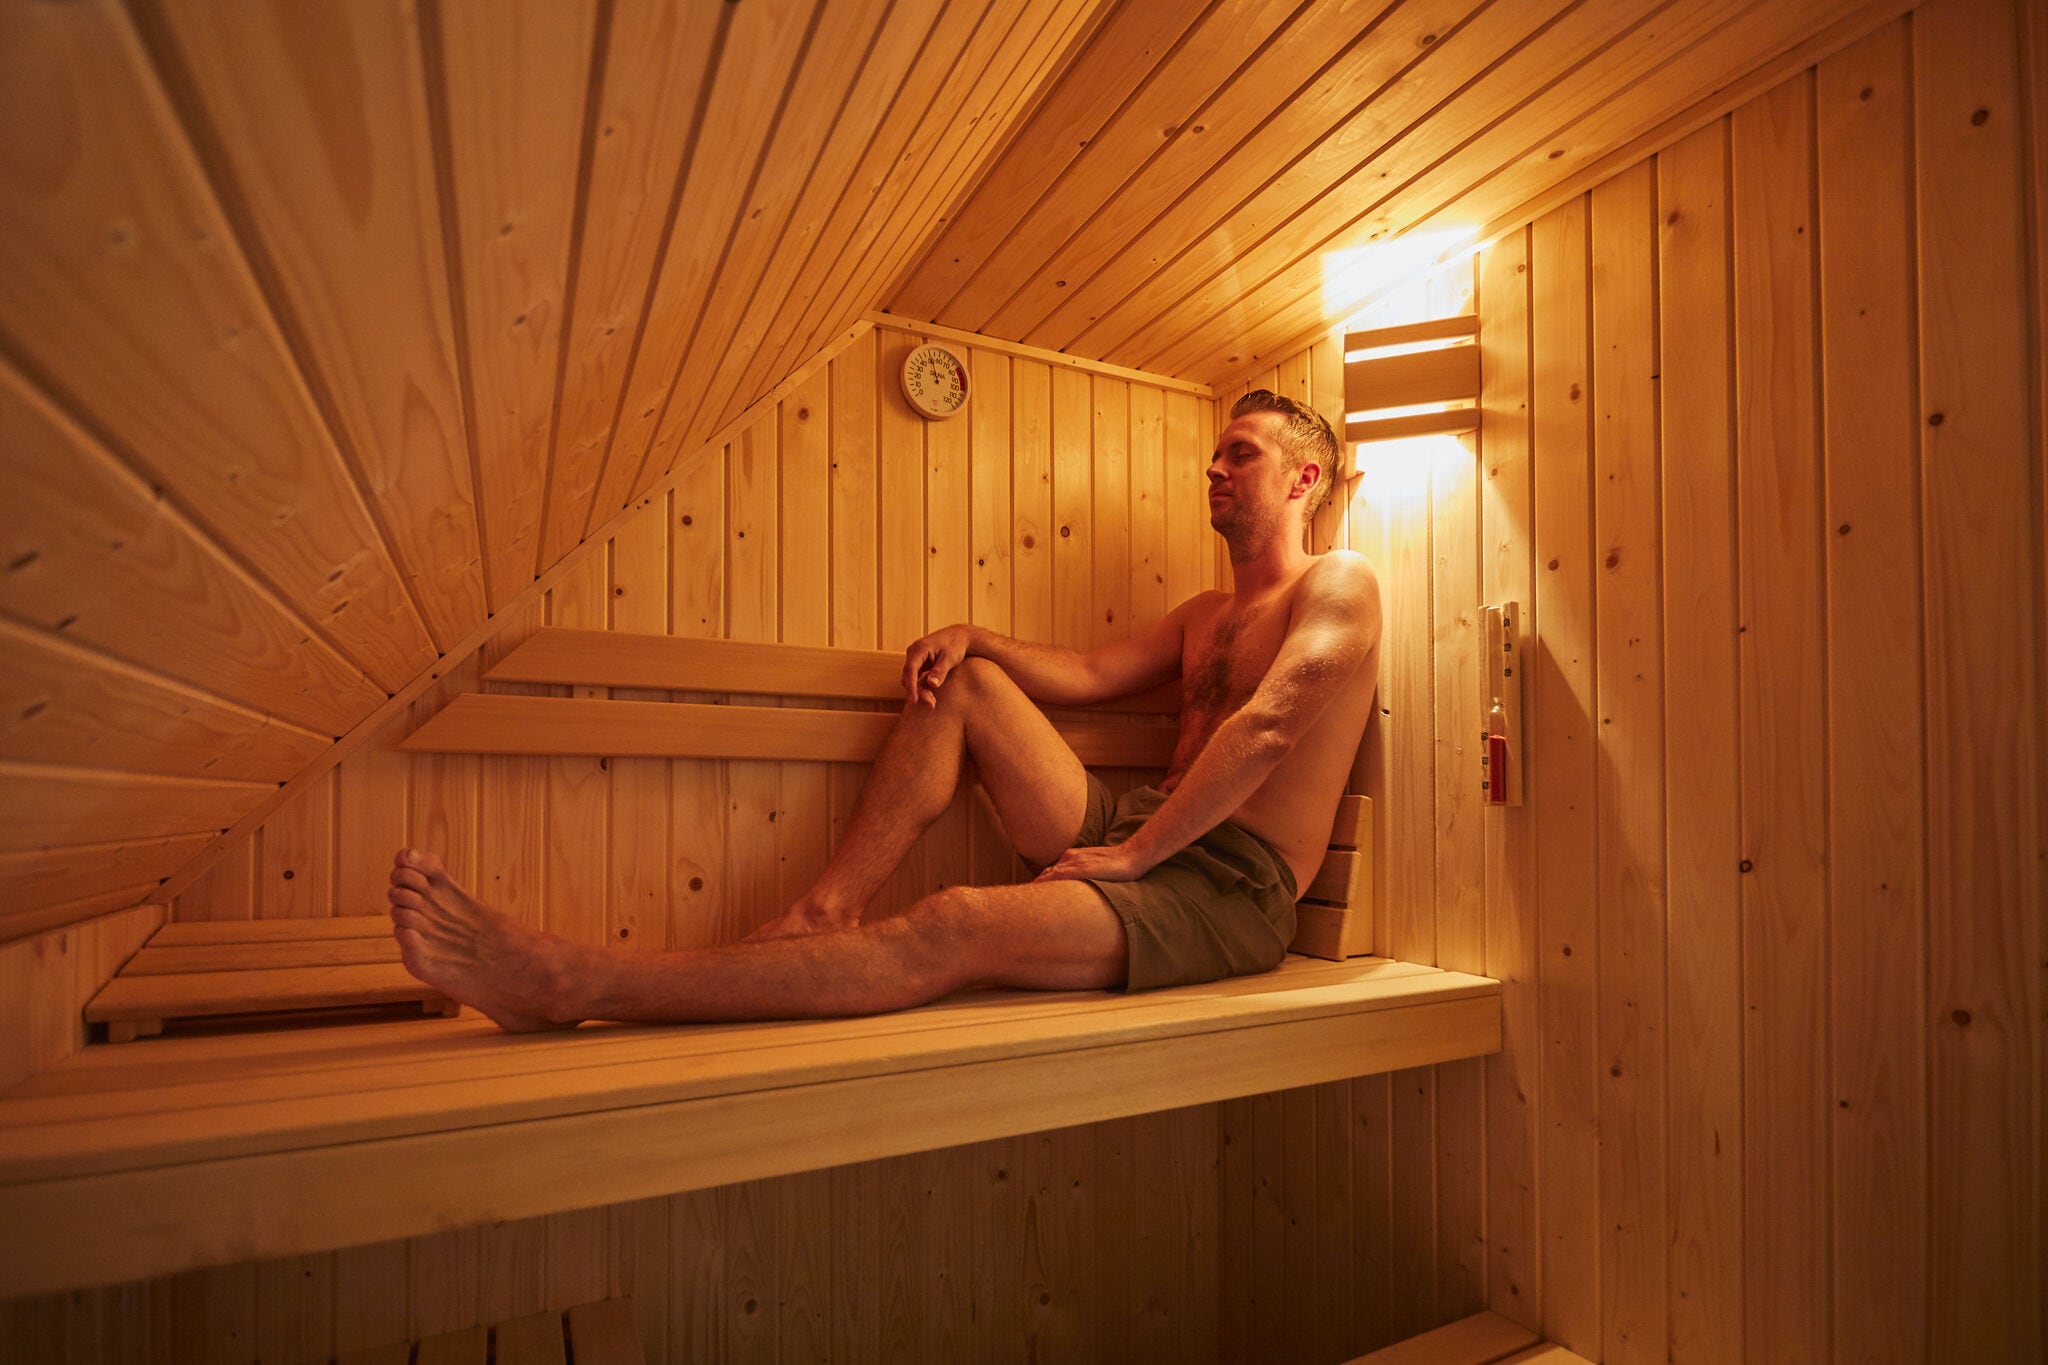 Luxuriöse kinderfreundliche Villa mit Sauna in Limburg